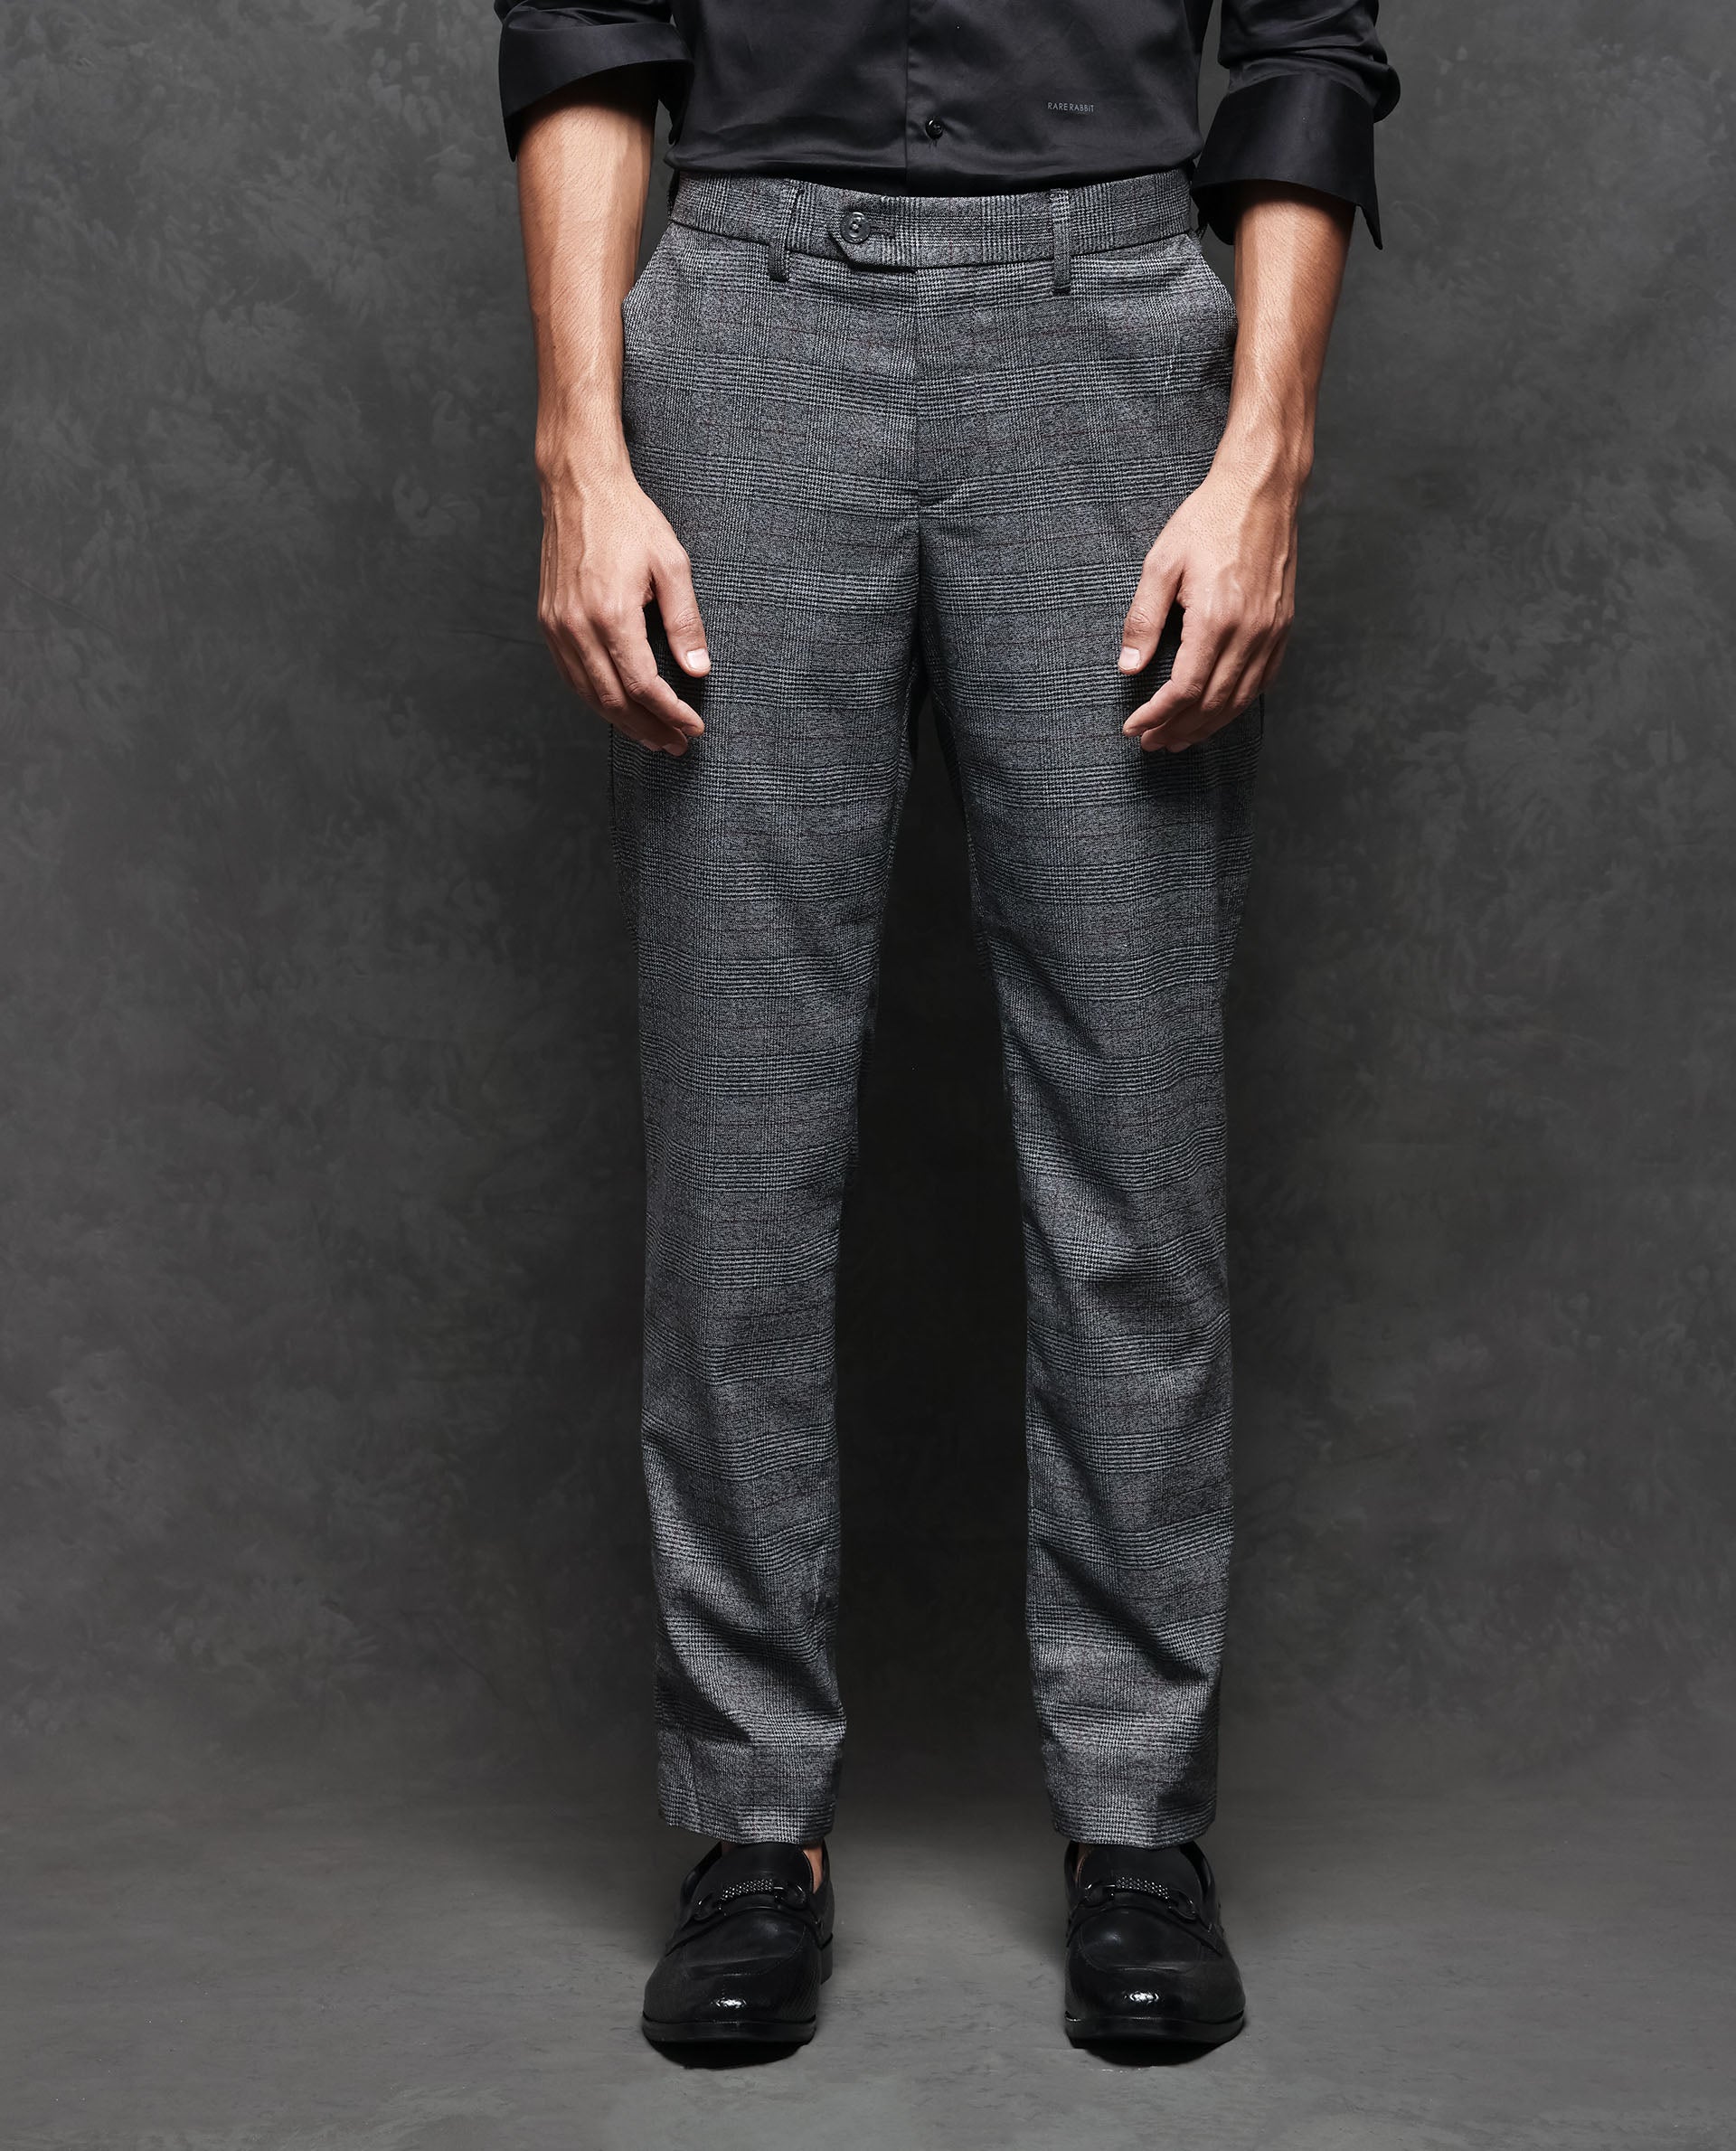 Slim Fit Dark Grey Pant - Benjamin's Menswear